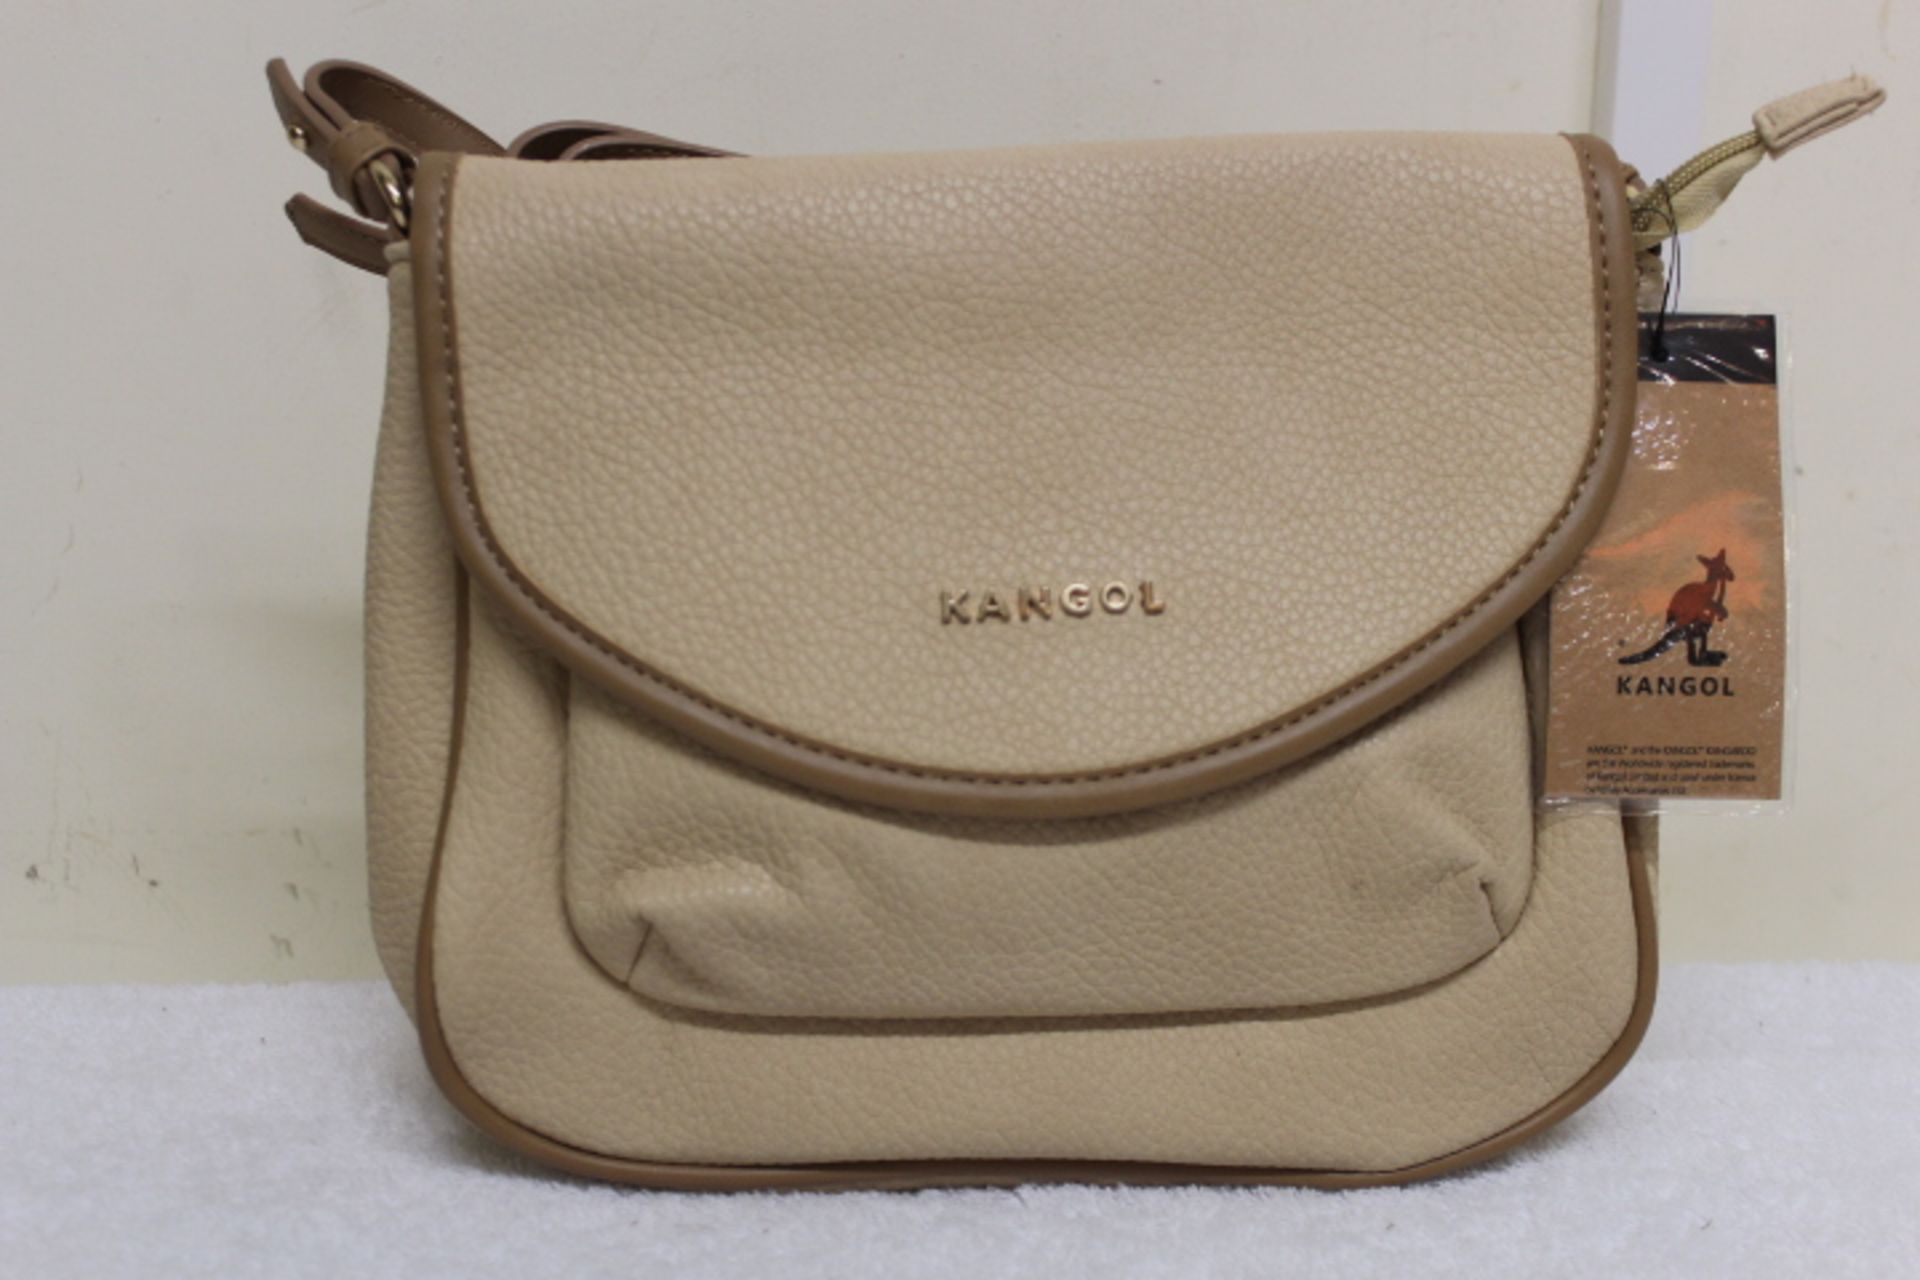 V Brand New Kangol Beige & Brown Flapover Crossbody Bag